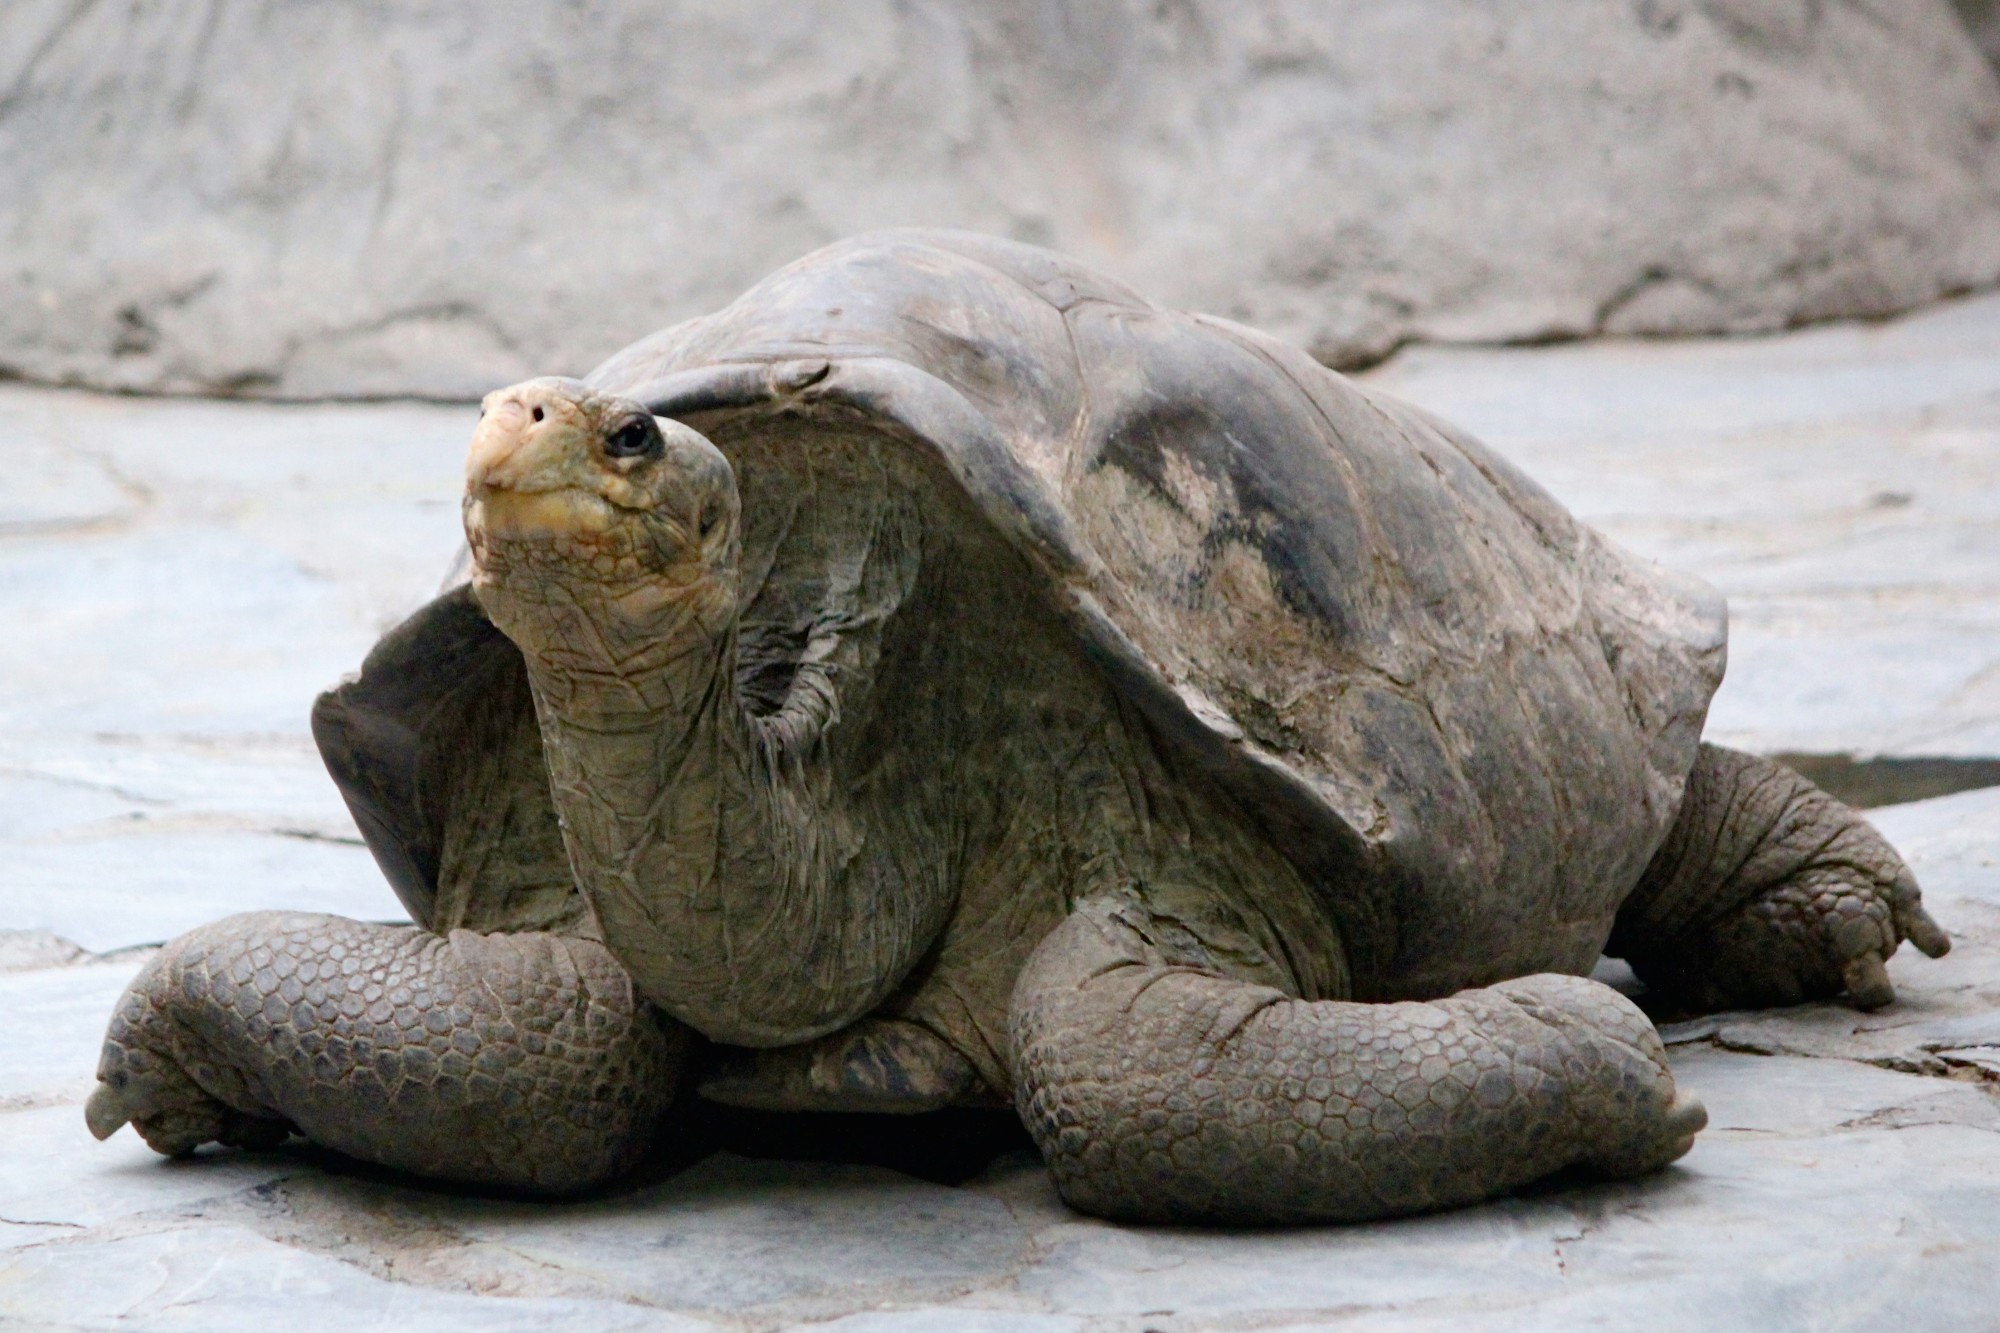 Абингдонские слоновые черепахи. Абингдонская слоновая черепаха. Галапагосская черепаха. Одинокий Джордж черепаха. Галапагосская черепаха одинокий Джордж Япония.